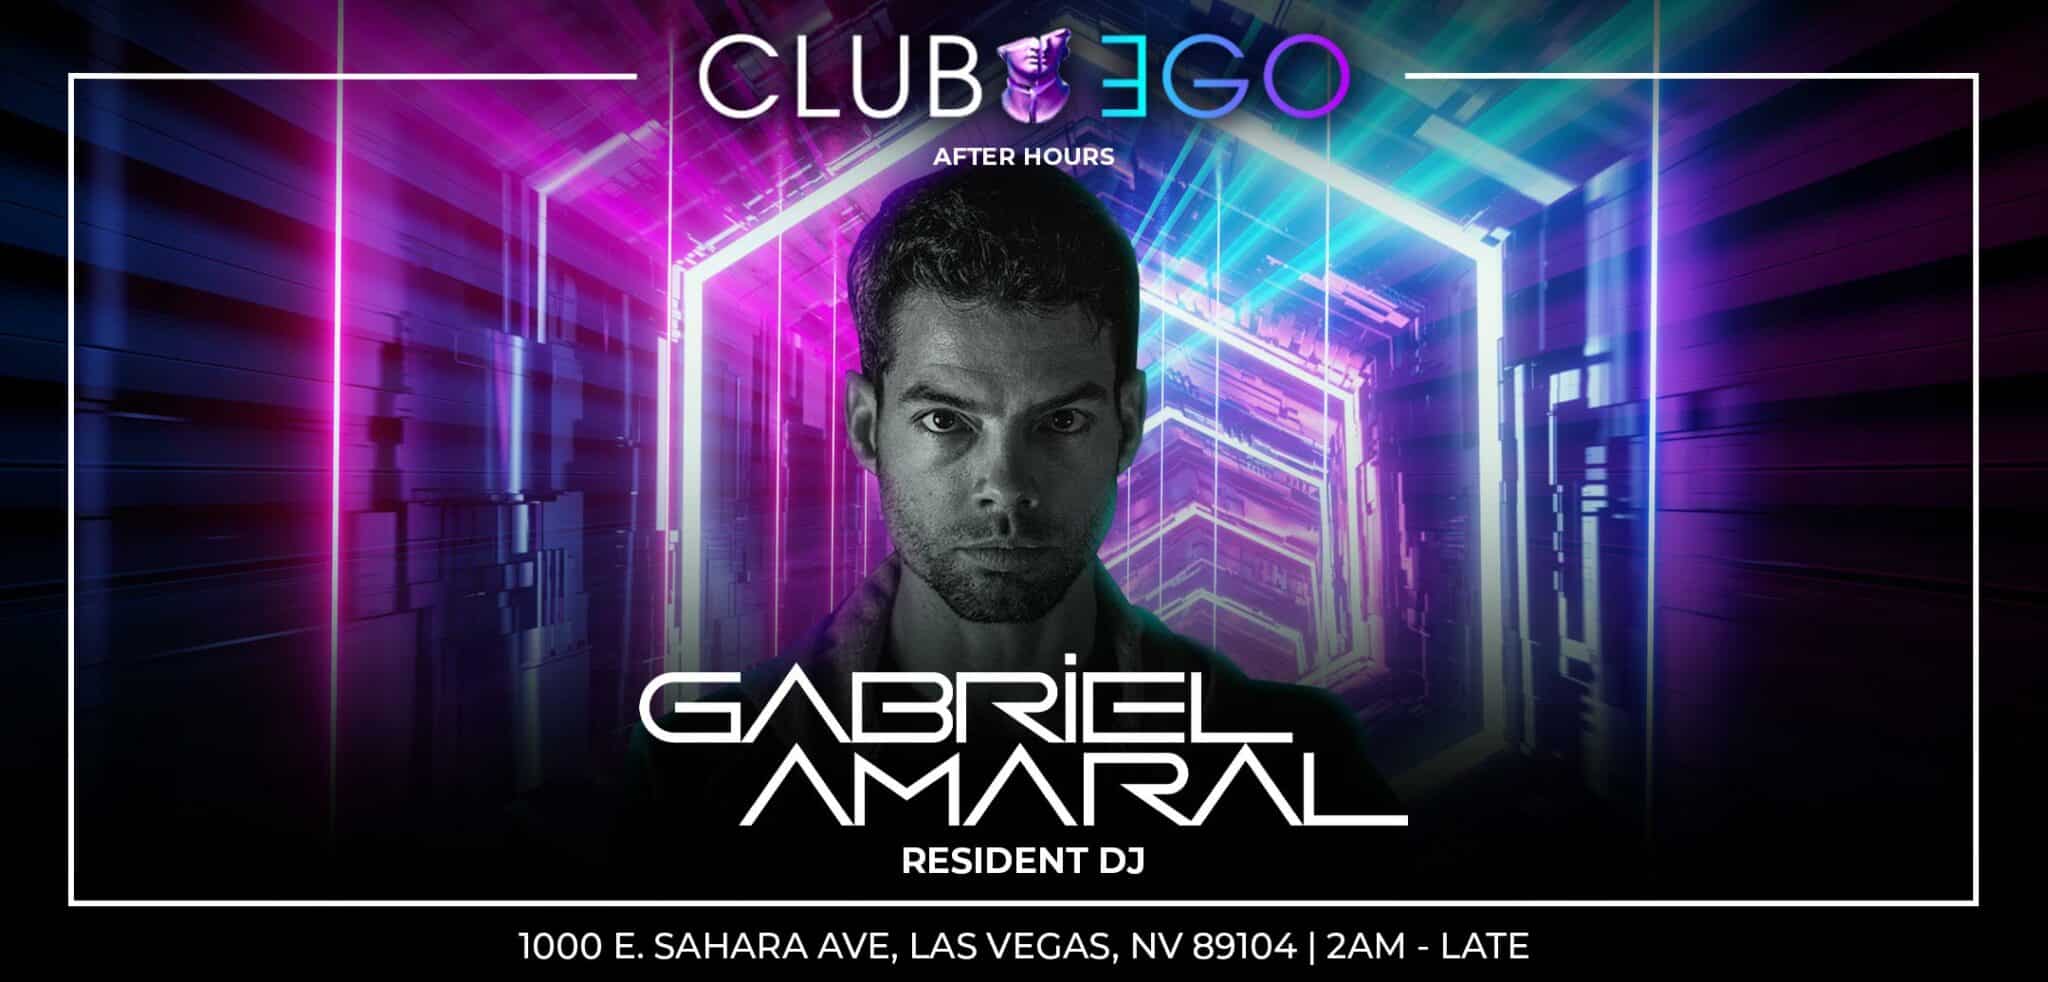 Club EGO Resident DJ Gabriel Amaral